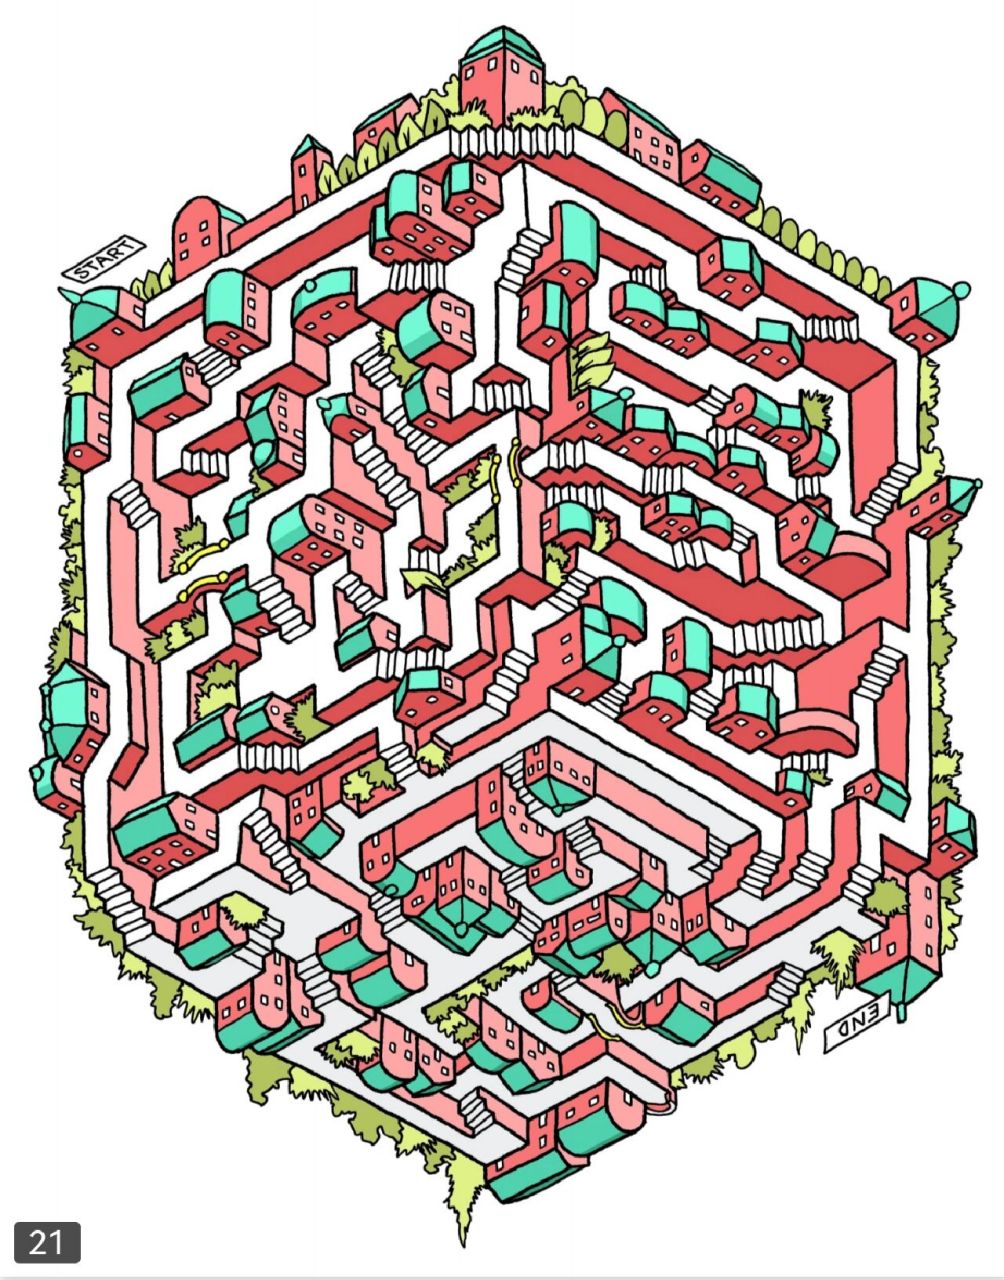 立体迷宫第二弹 看来最近大家都比较想玩立体迷宫,把其余的都发出来